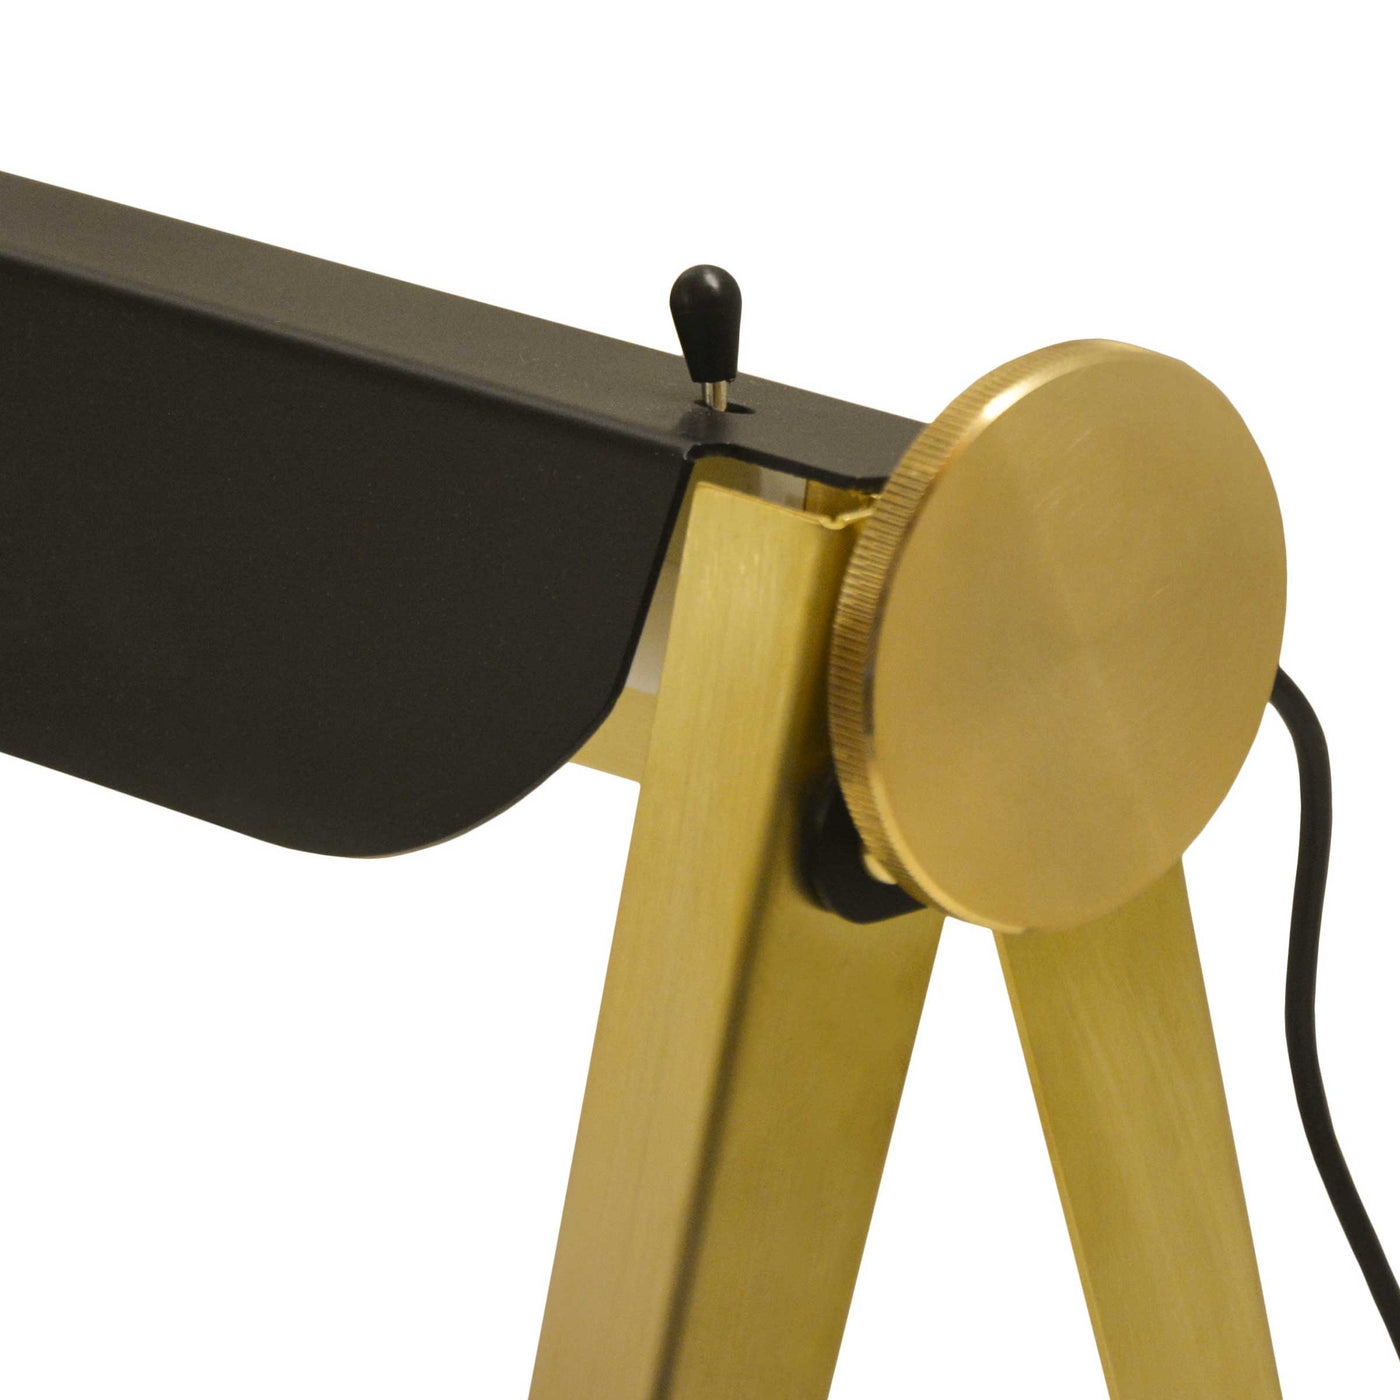 Brass Table Lamp CAVALLETTO by Hi.Project for Brillamenti 08